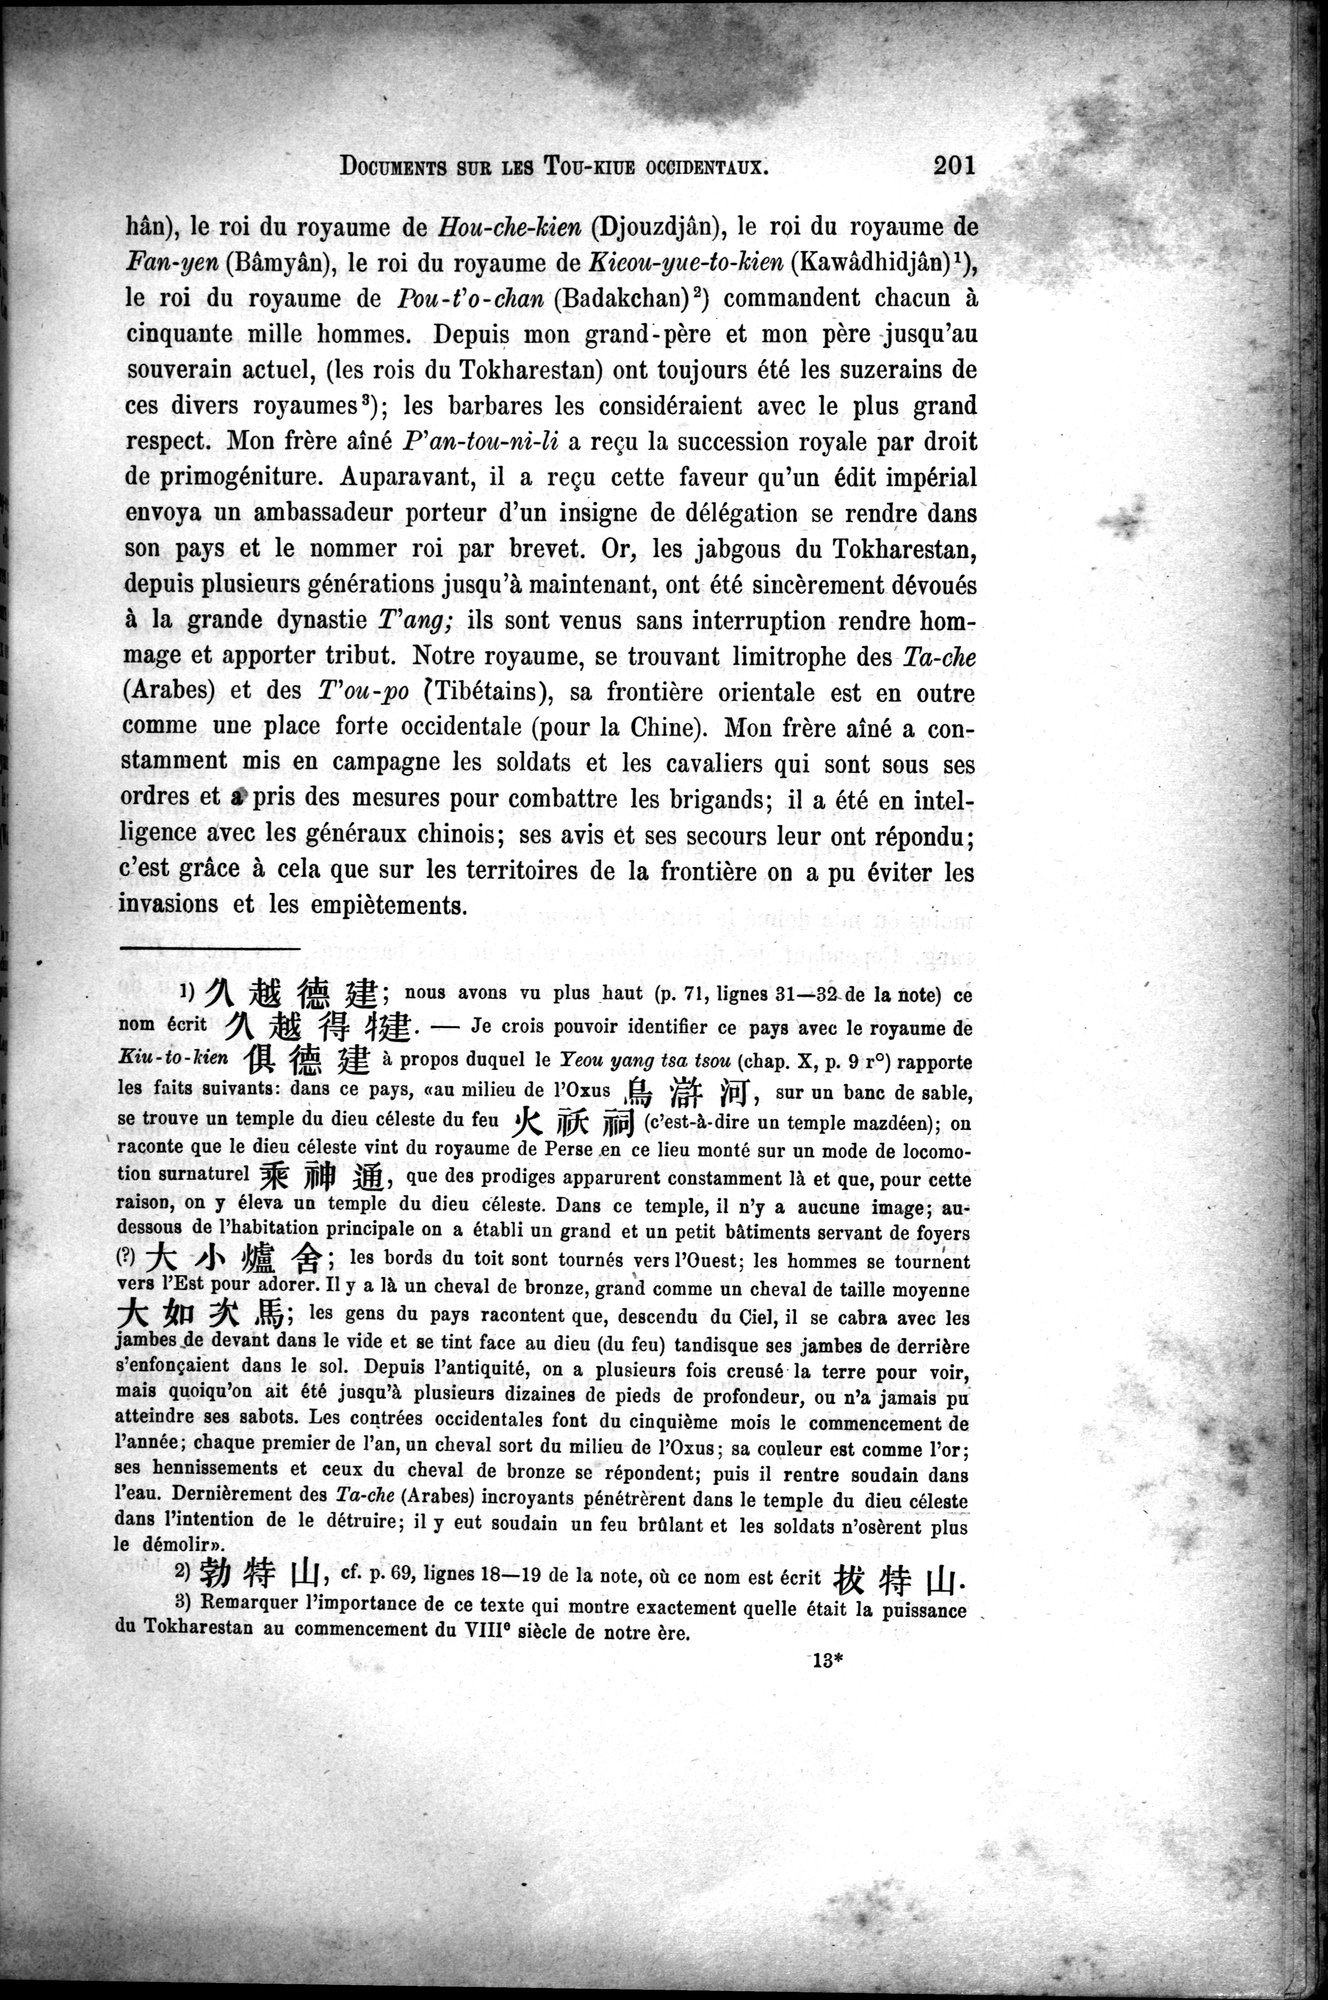 Documents sur les Tou-kiue (Turcs) occidentaux : vol.1 / Page 211 (Grayscale High Resolution Image)